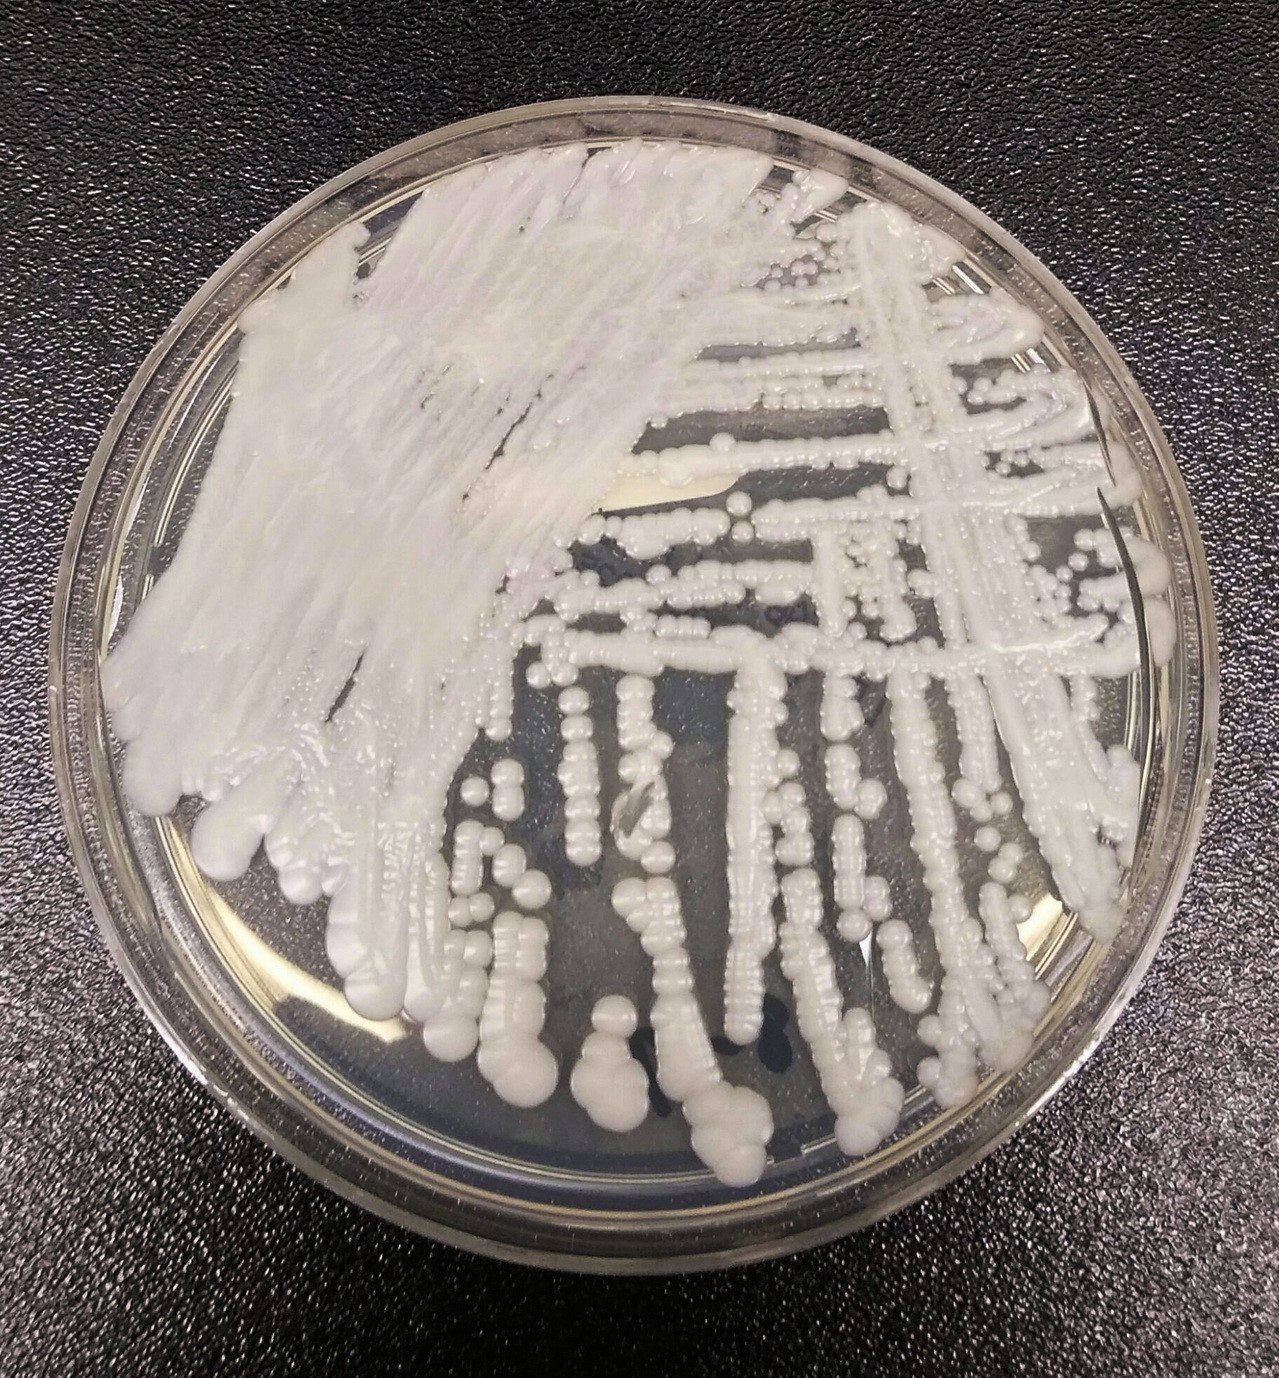 美國疾病防治中心(CDC)一個實驗室在培養皿中培養出的「耳念珠菌」(Candida auris)。美聯社